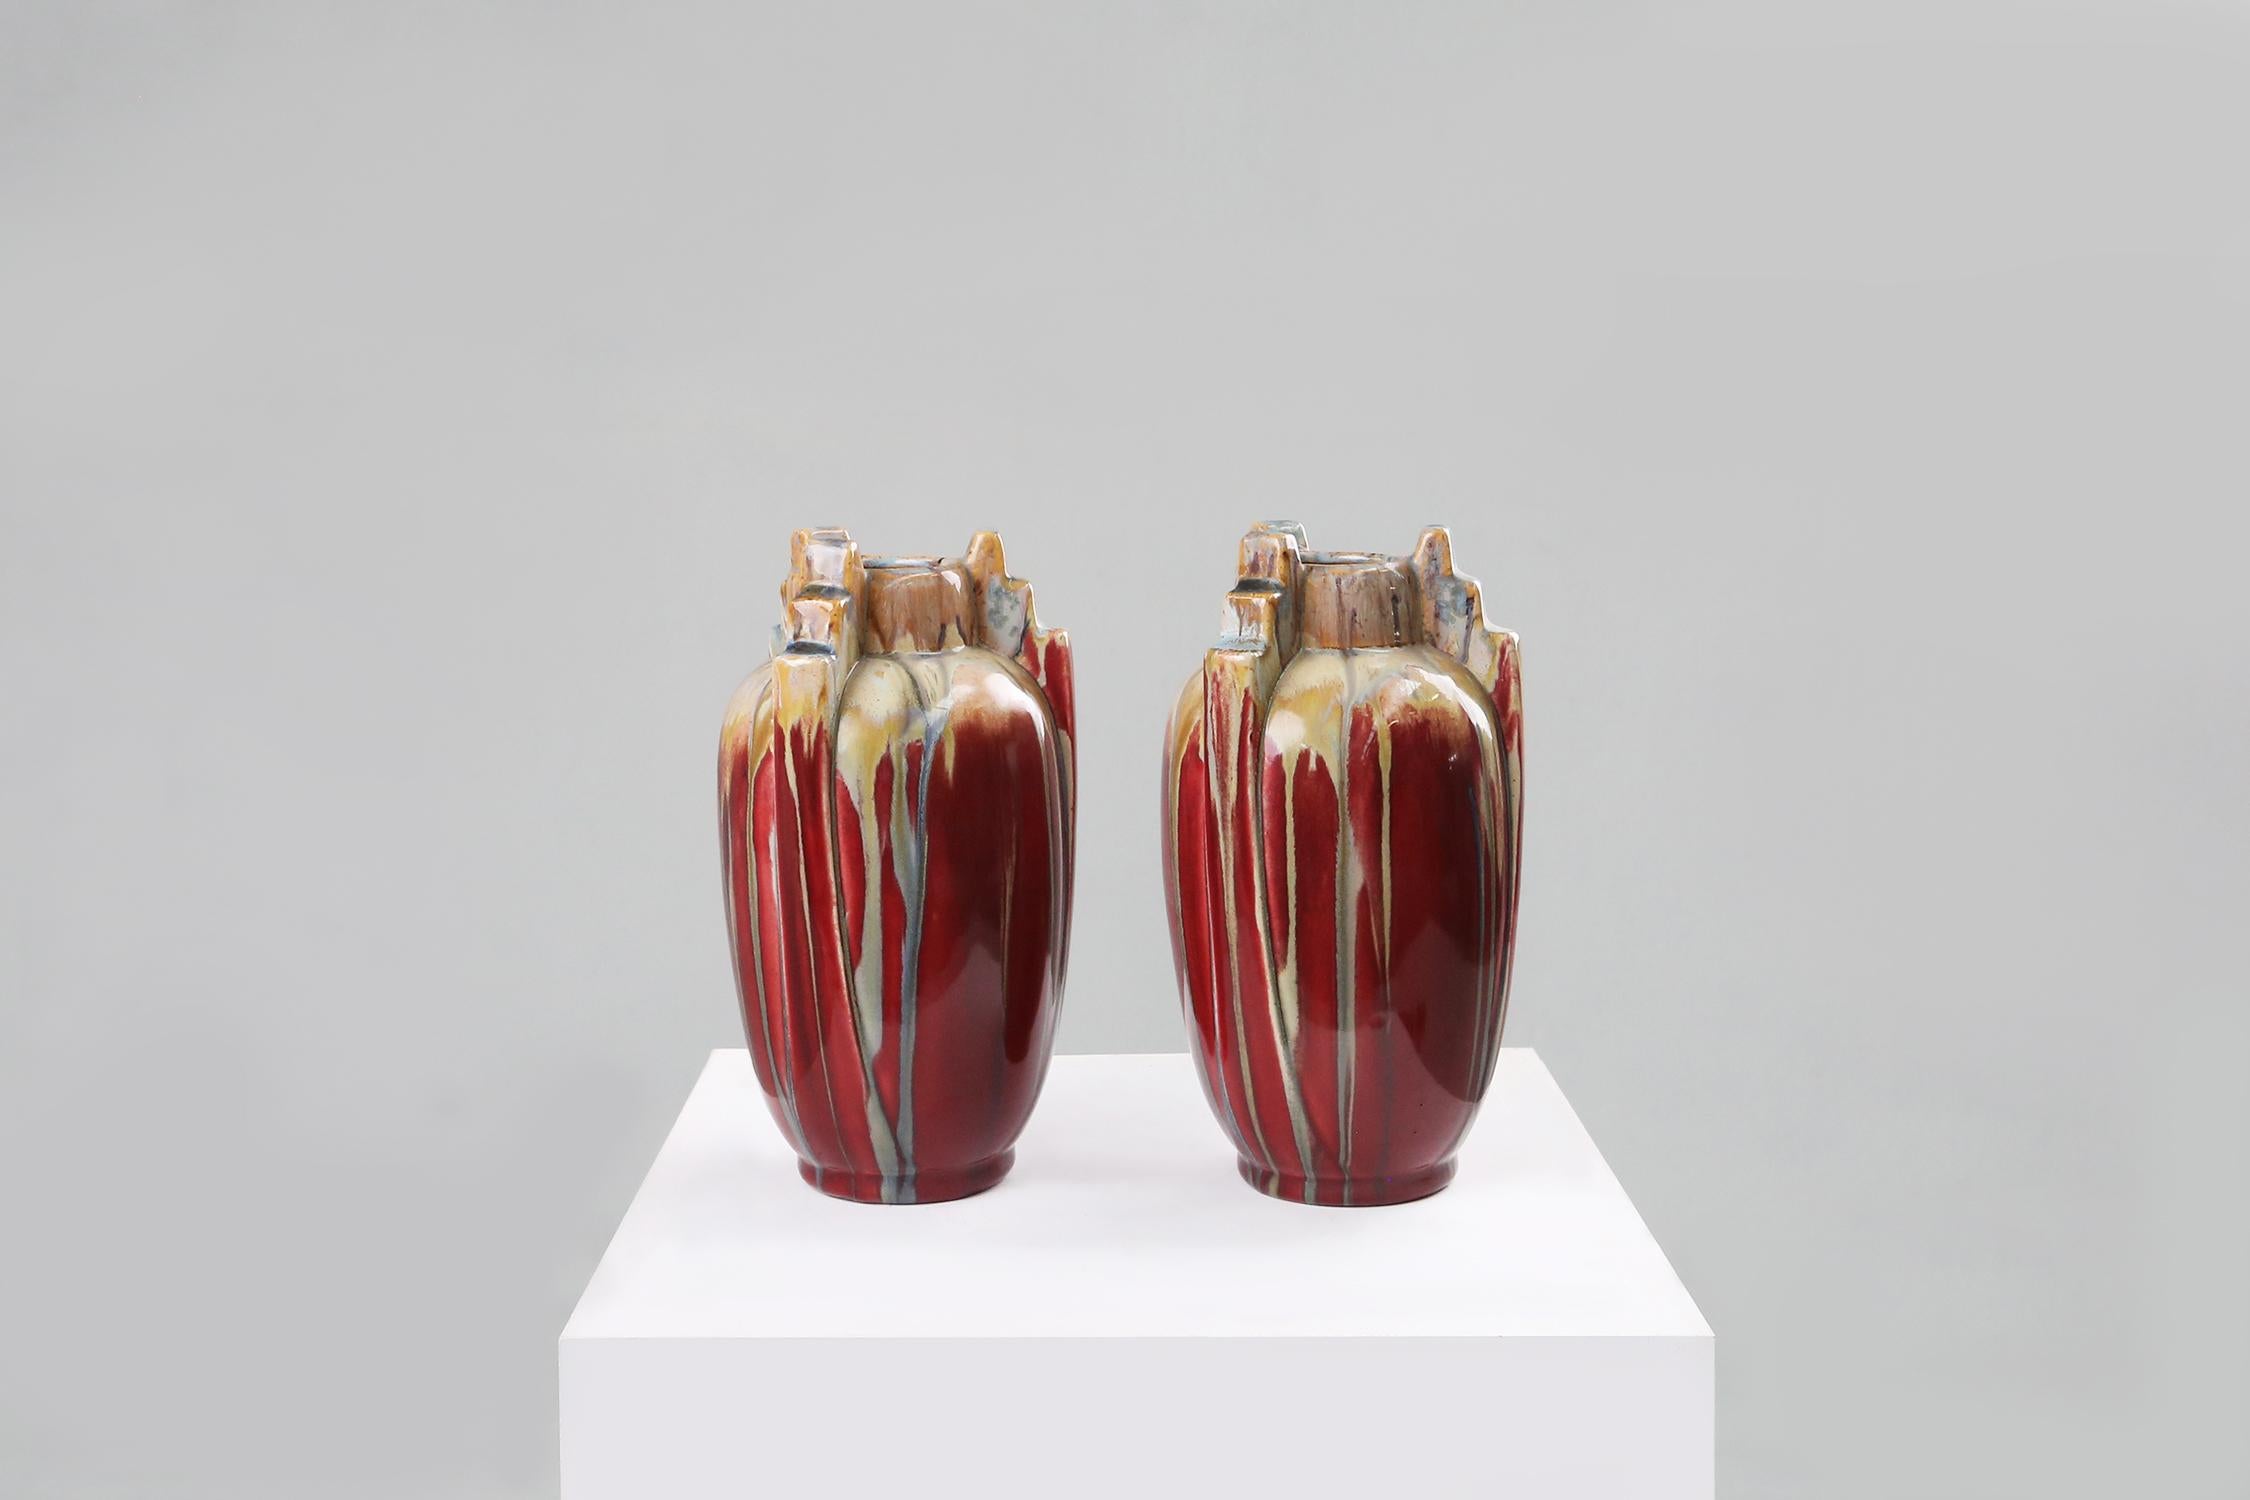 Ensemble de vases Art Déco en céramique avec de belles couleurs rouge, marron, jaune.
Il possède les magnifiques détails géométriques qui représentent vraiment la période Art déco des années 1930.